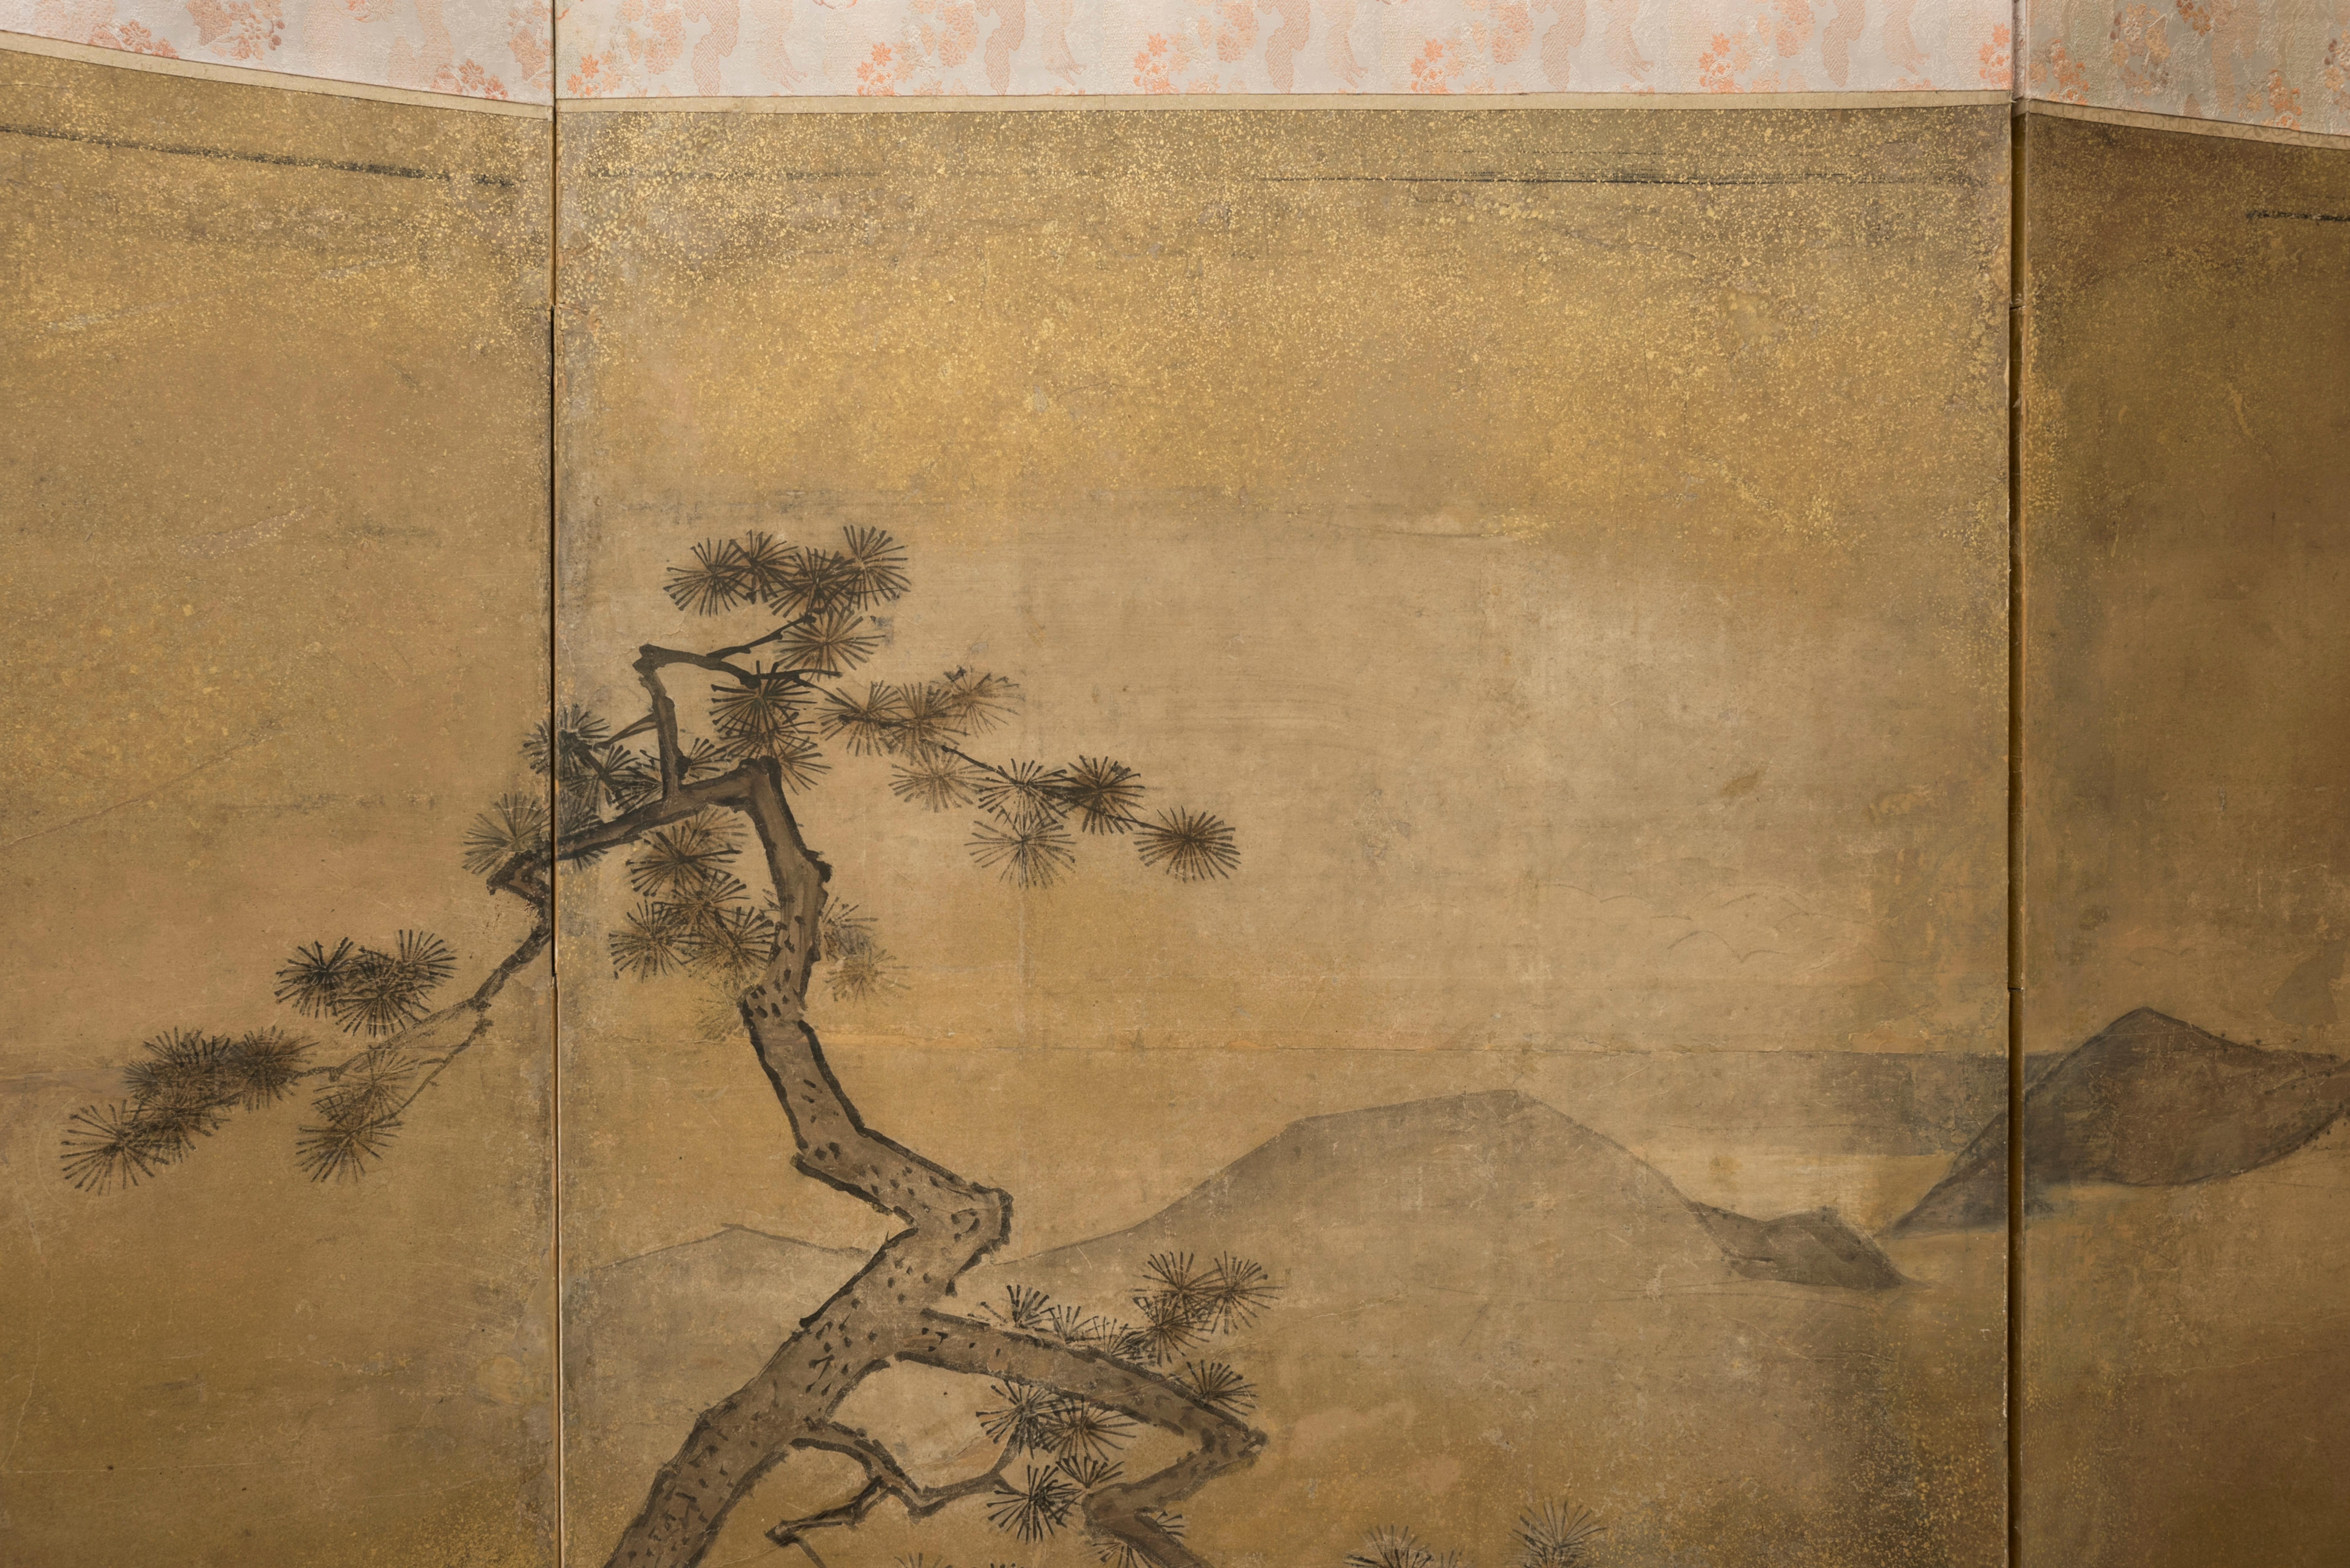 Sechstafelige Leinwand mit der Darstellung des Auszugs eines chinesischen Kaisers zu Pferd und seiner Konkubine in einer luxuriösen Sänfte aus der Stadt. 

Es könnte sich um eine Szene handeln, die das Gedicht Das Lied vom ewigen Leid (Chang hen ge,